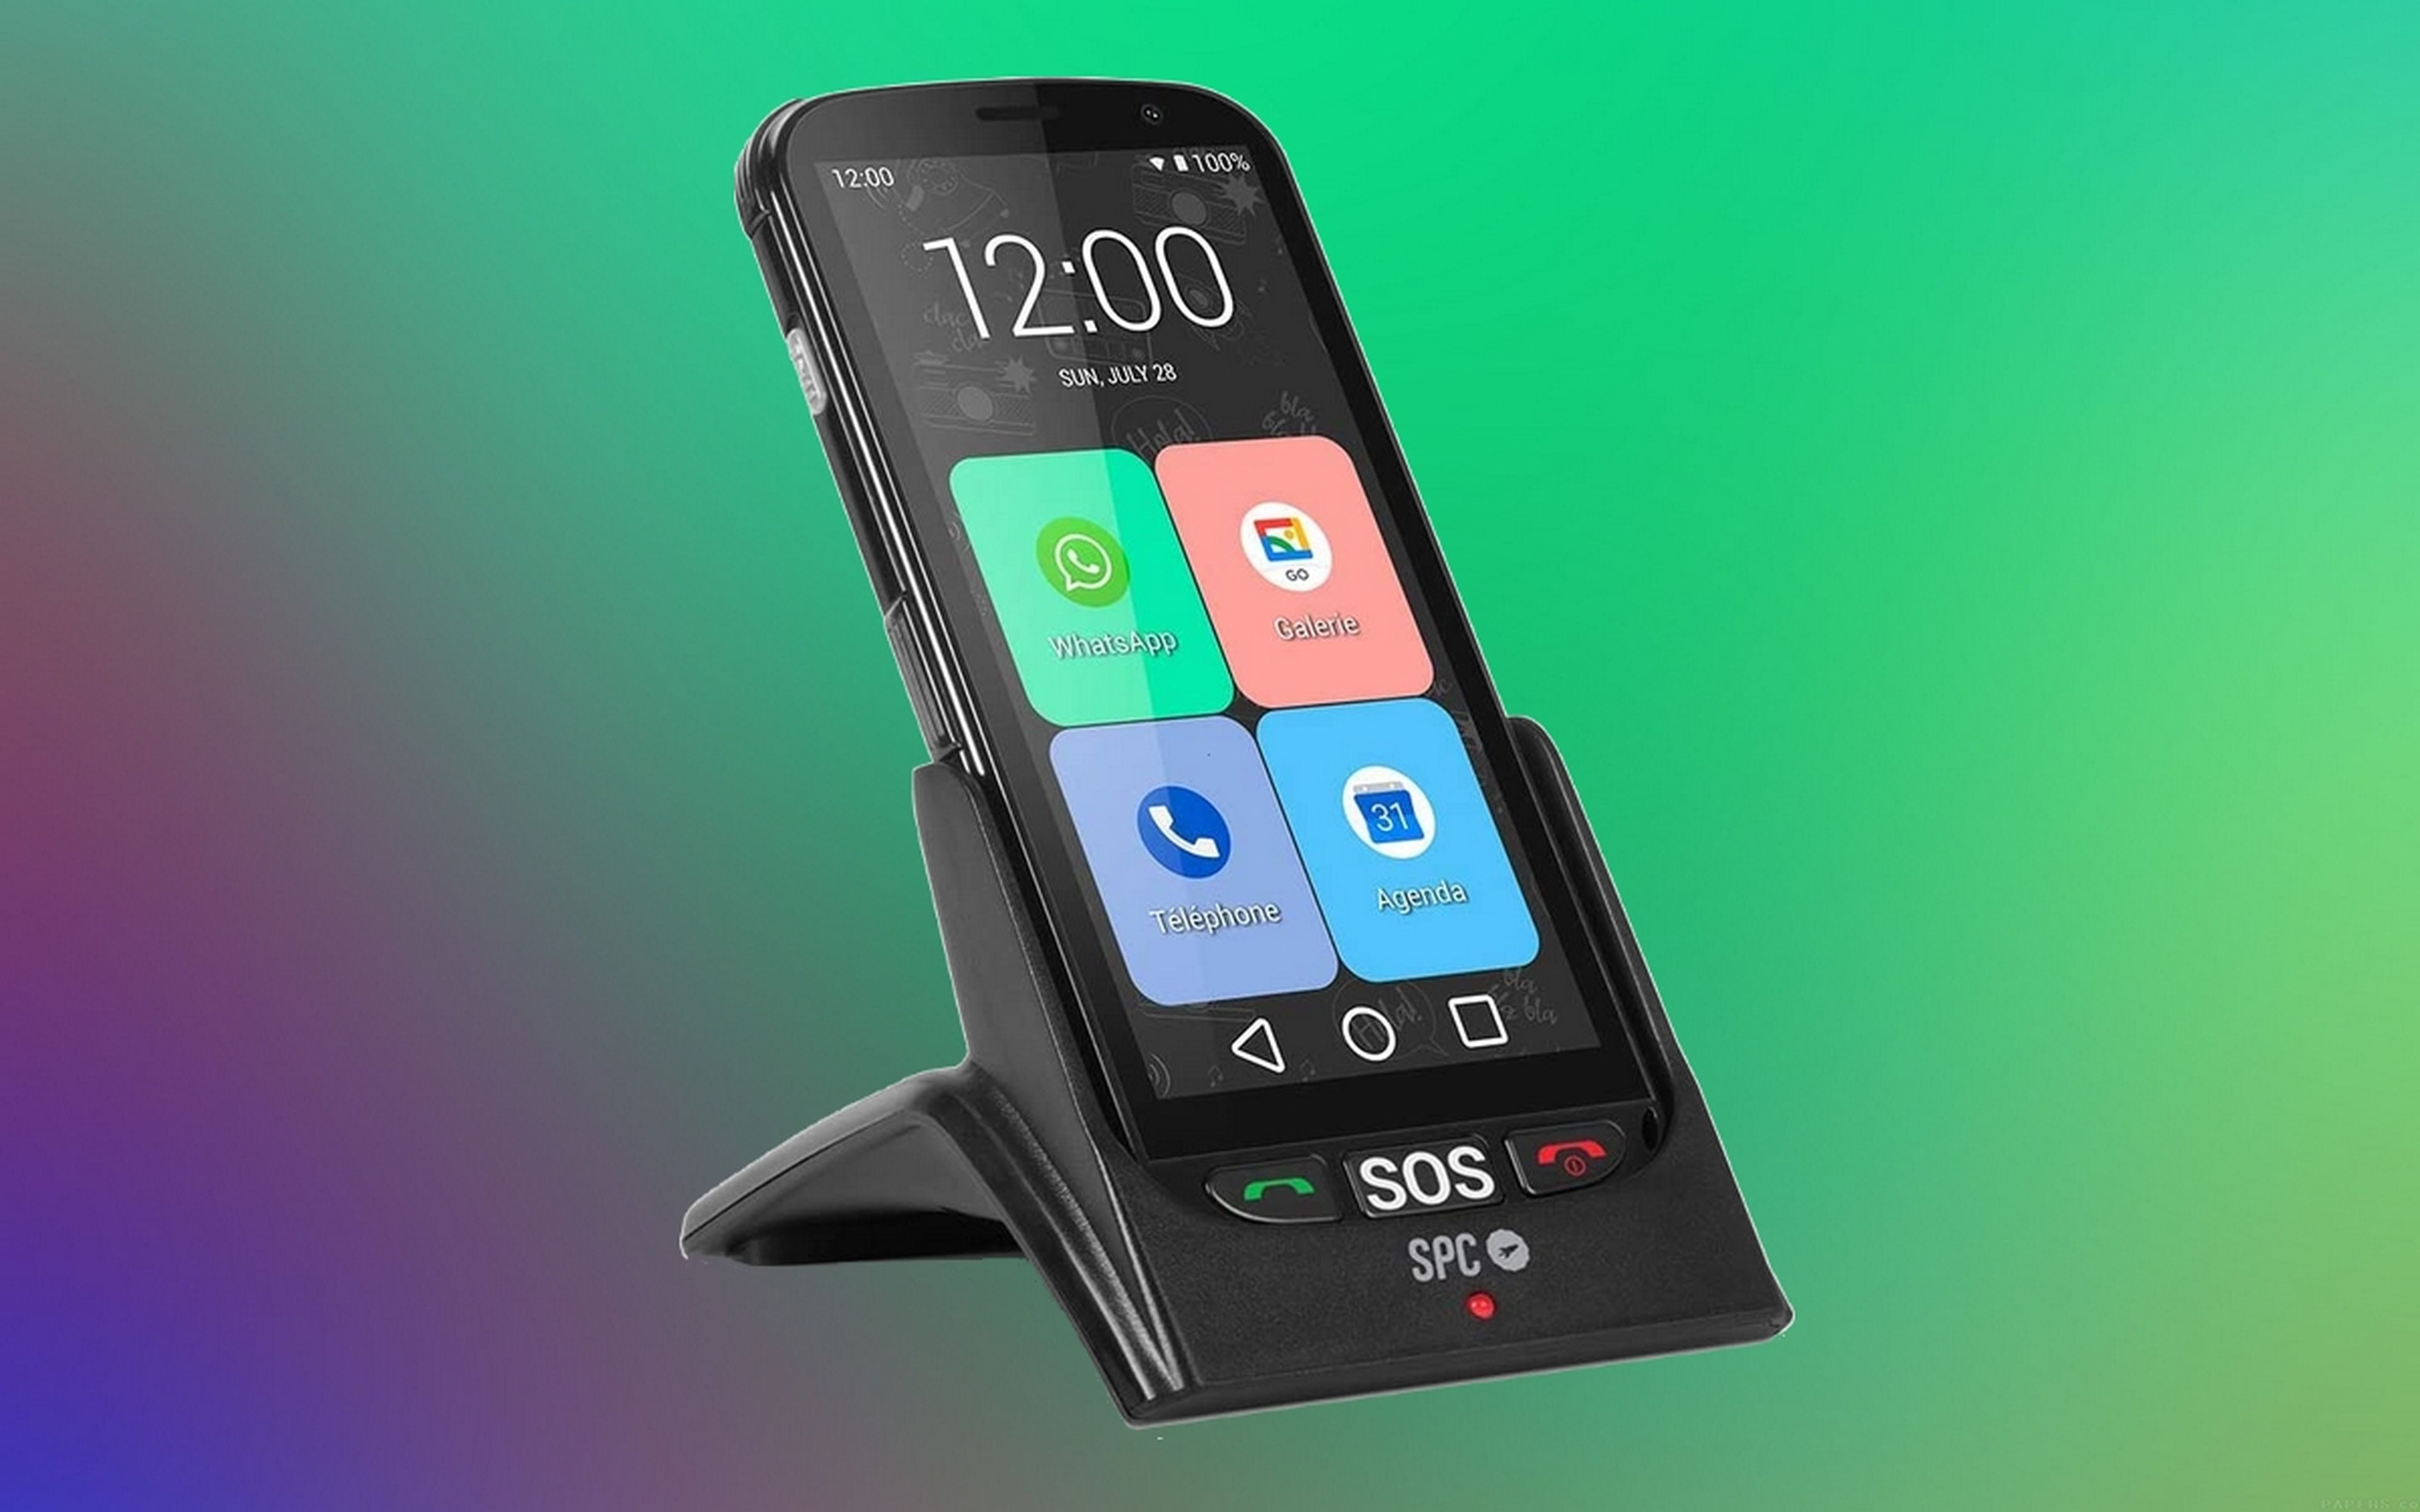 SPC Apolo, el móvil para personas mayores con botón SOS y otras mejoras,  con un buen descuento